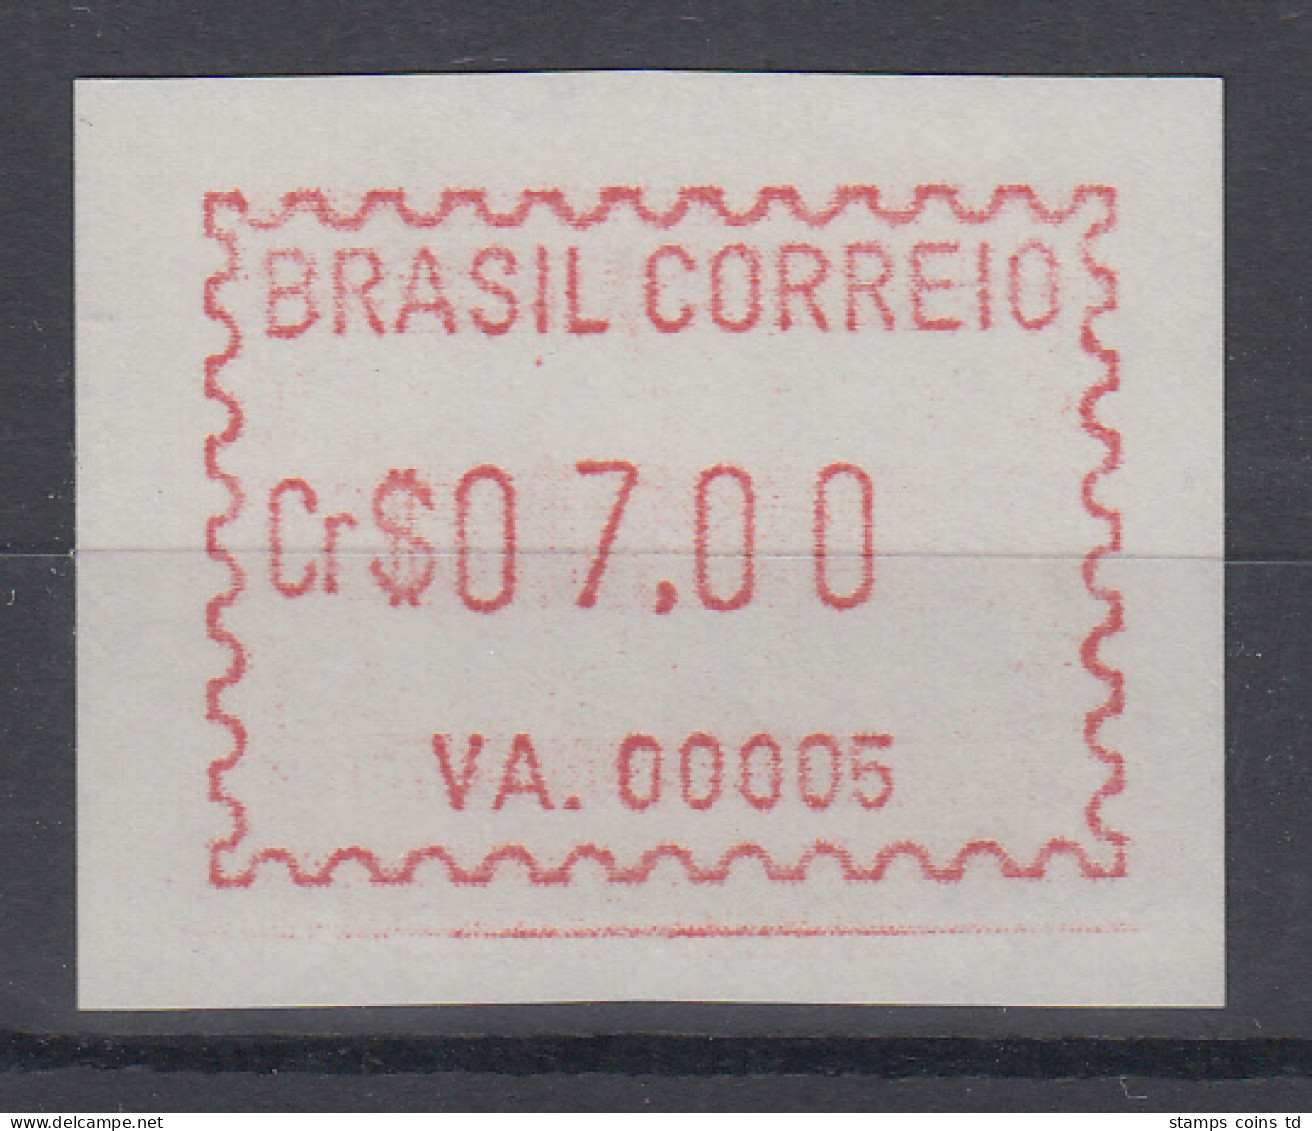 Brasilien FRAMA-ATM VA.00005, Wert 07,00 Cr$, Von VS **  - Franking Labels